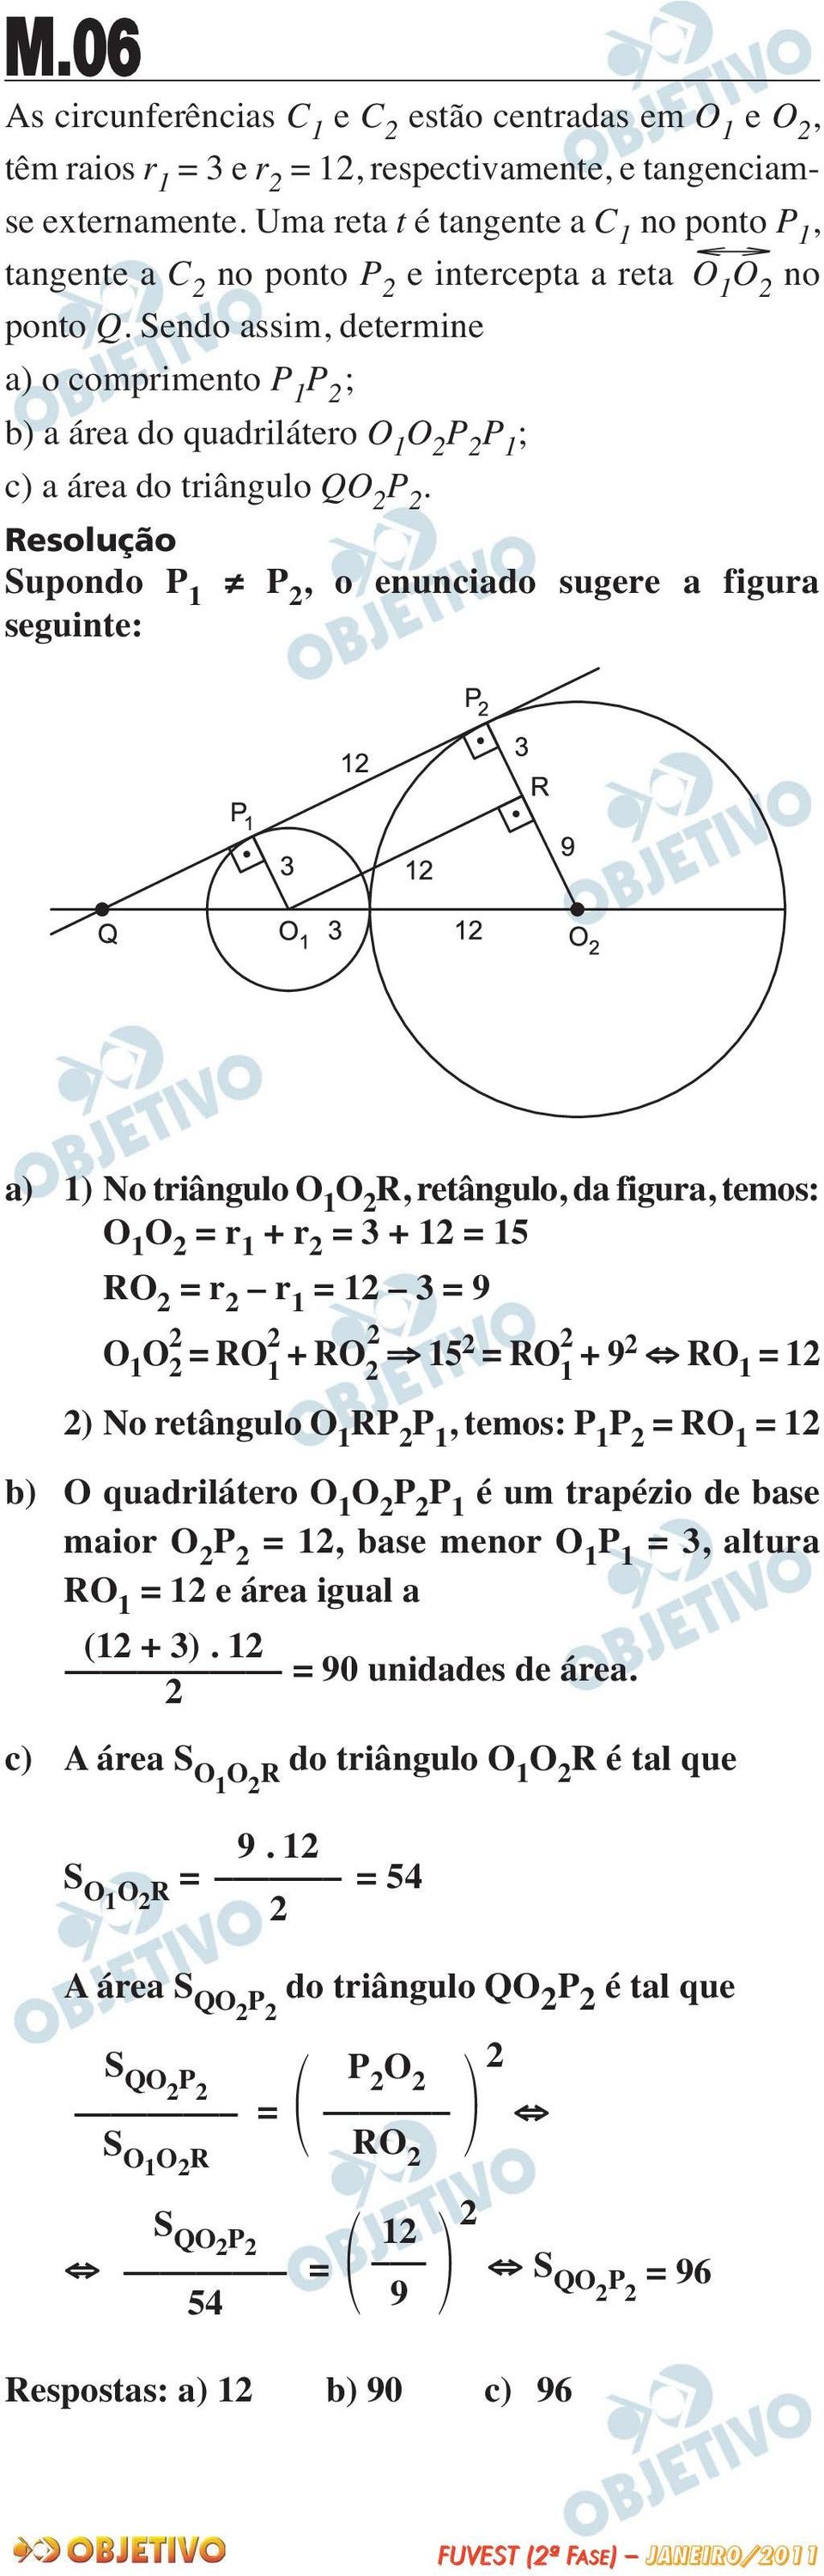 Sendo assim, determine a) o comprimento P 1 P ; b) a área do quadrilátero O 1 O P P 1 ; c) a área do triângulo QO P.